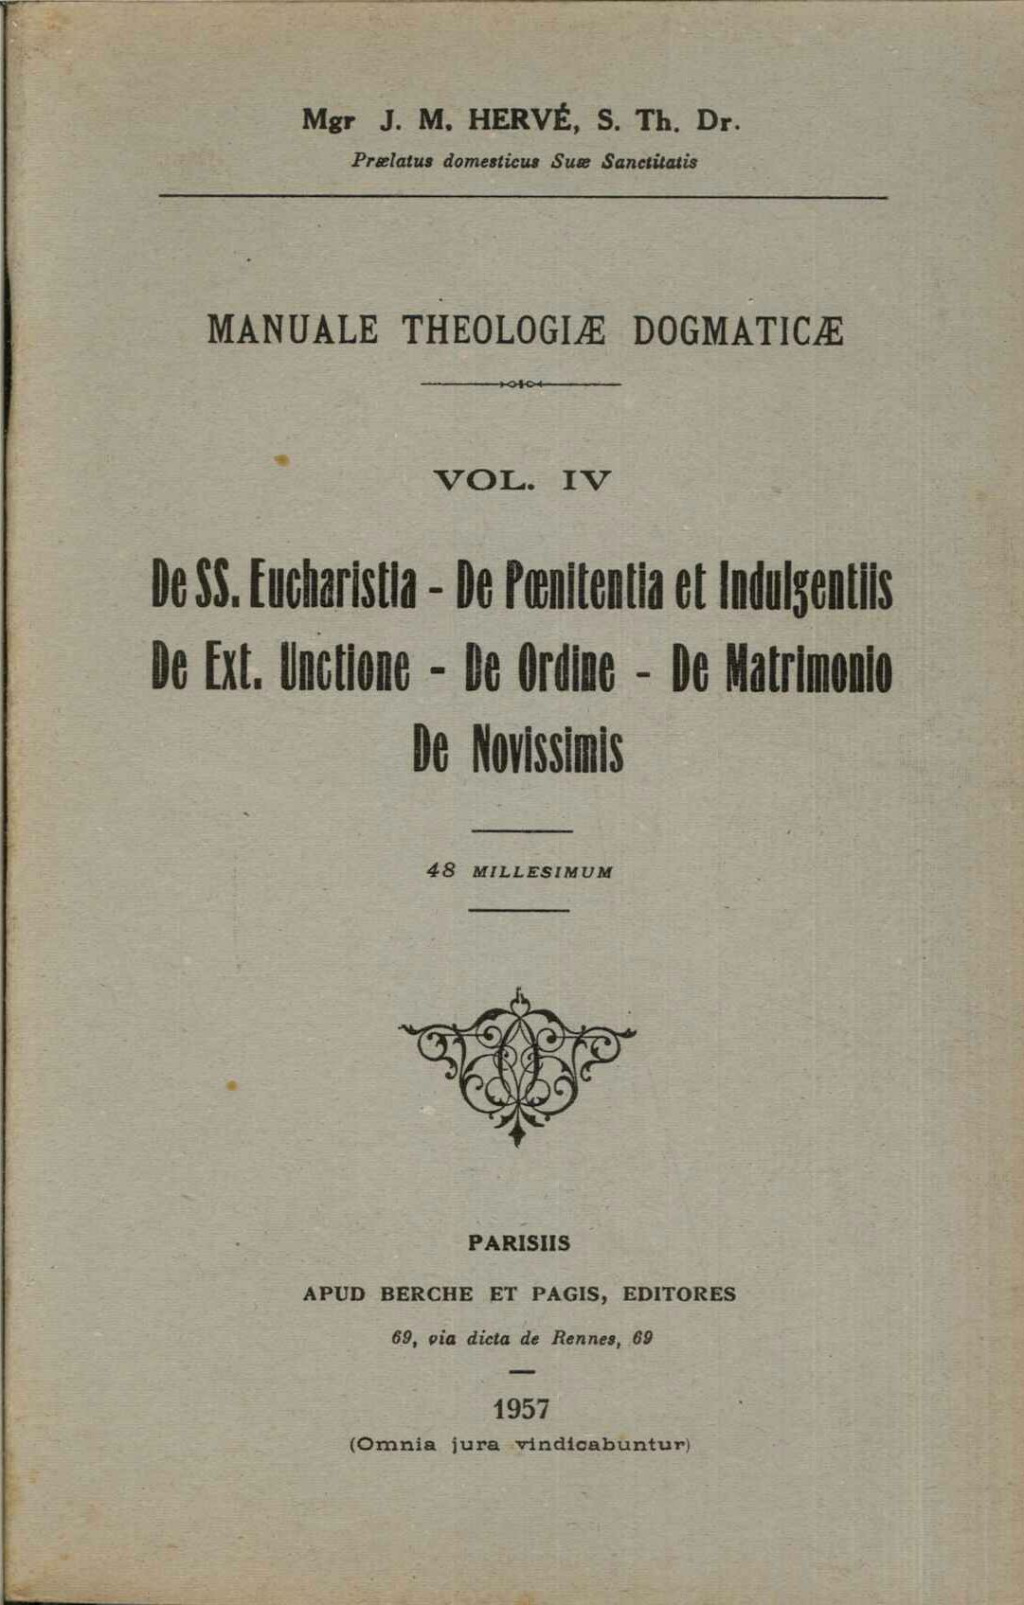 Manuale theologiae dogmaticae vol. IV De SS. Eucharistia- De Peoenitentia et Indulgentiis- De Ext. Unctione- De Ordine- De Matrimonio- De Novissimis